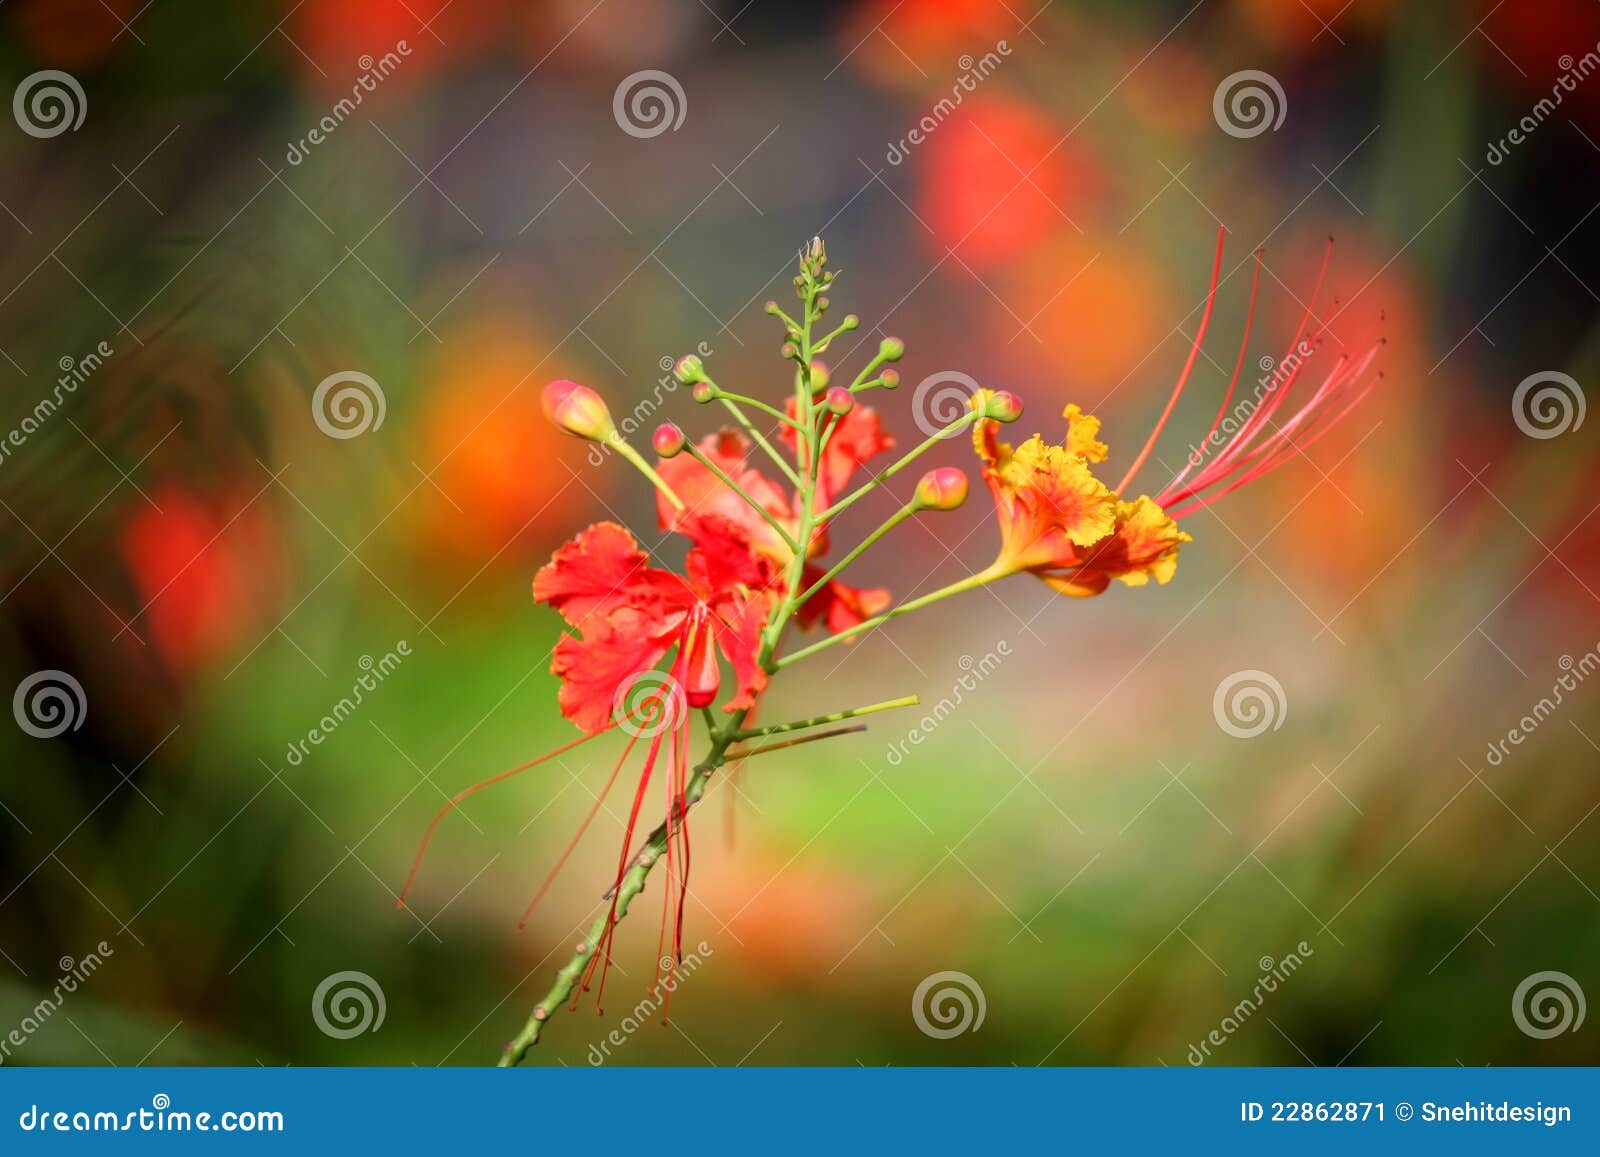 Premium Photo | Gulmohar flower